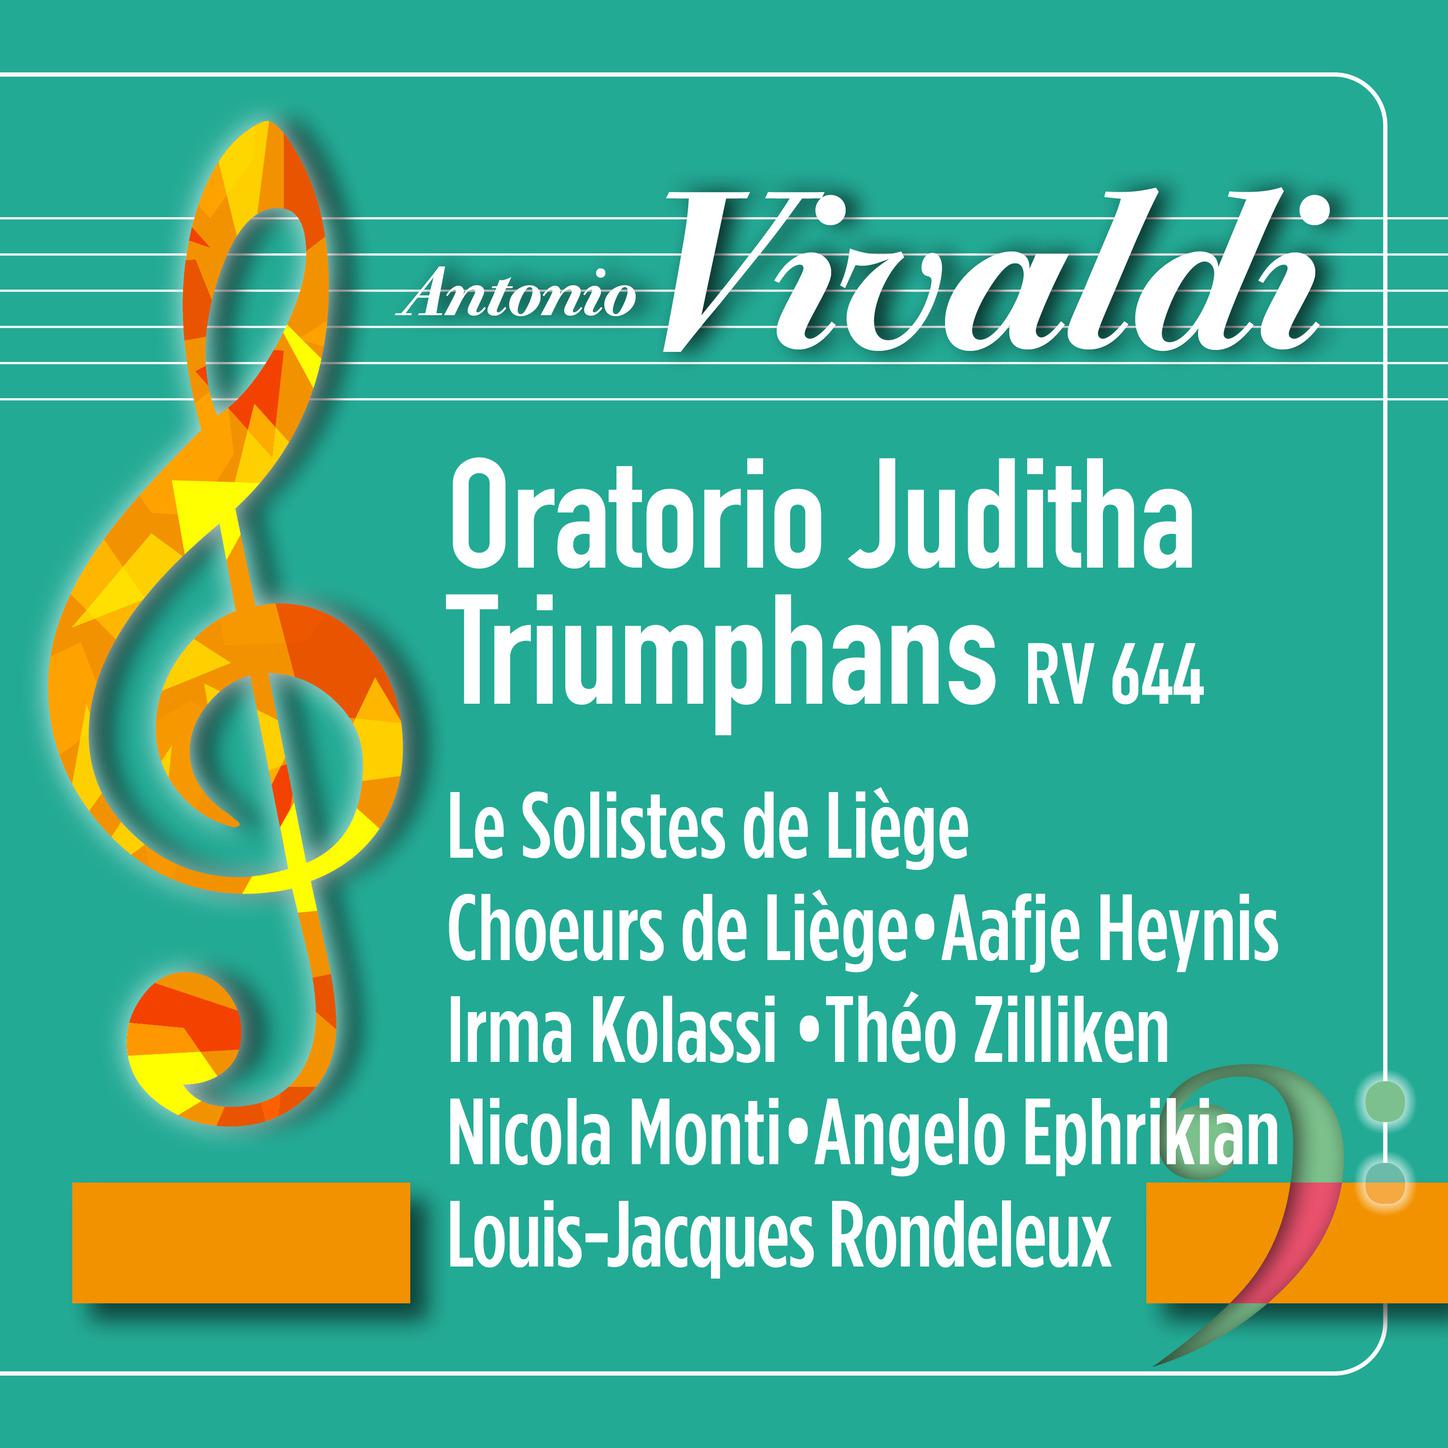 Le Solistes de Liège - Vivaldi: Juditha Triumphans, RV 644: Recitativo. Quae fortunata es tu vaga Matrona - Aria. Non ita reducem